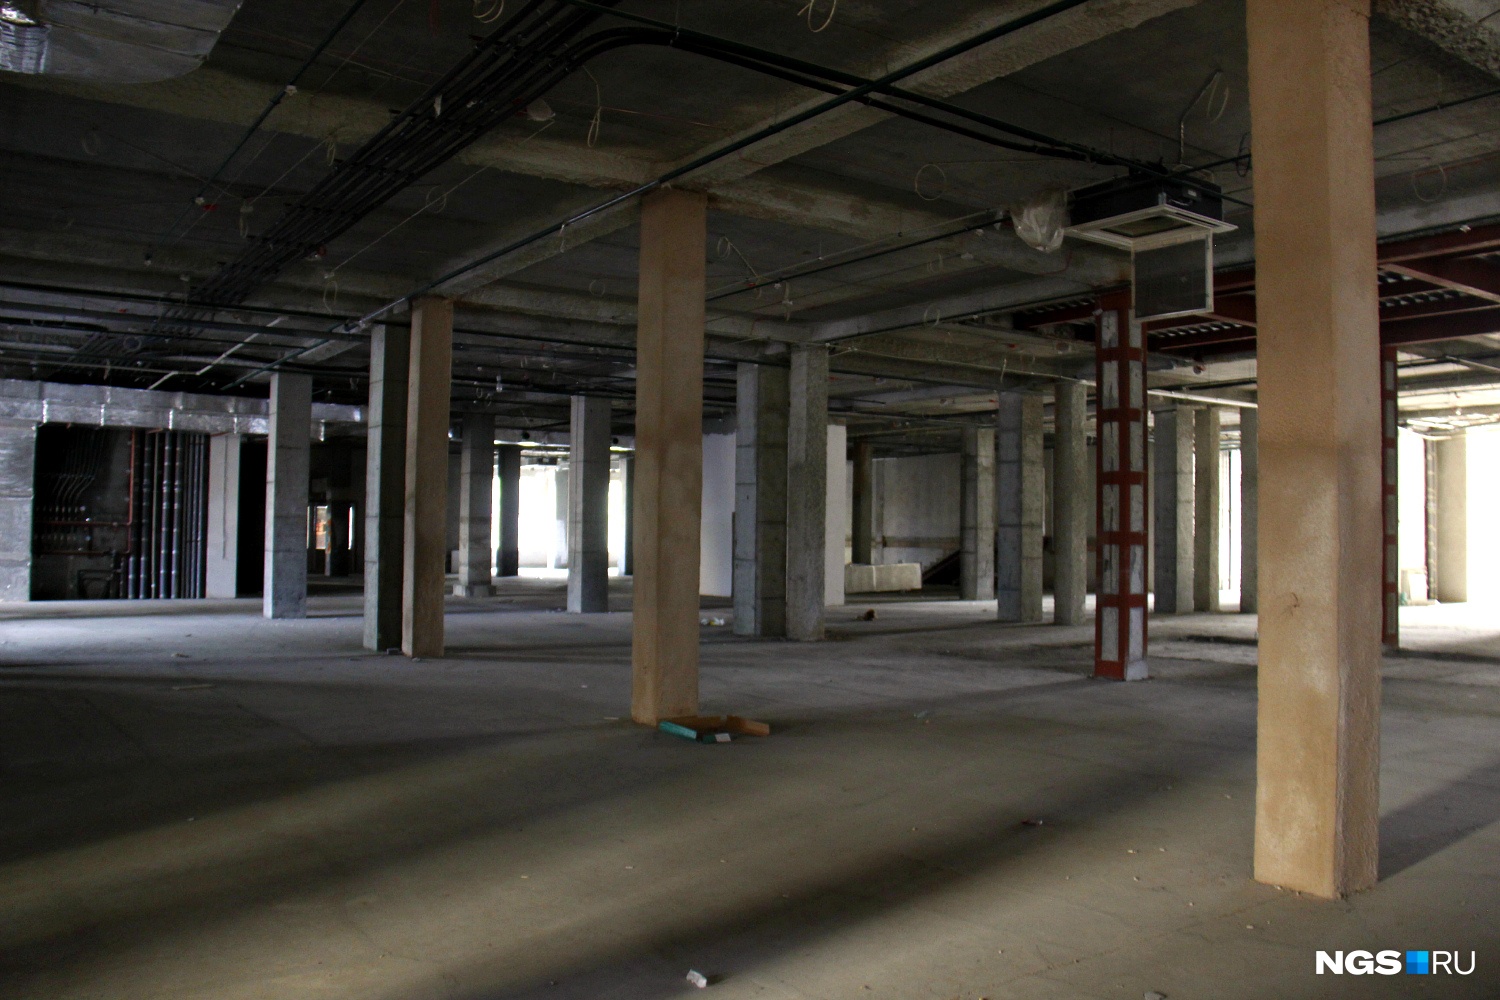 Общая площадь помещения, которое арендовано под проект, — более 2900 кв. метров